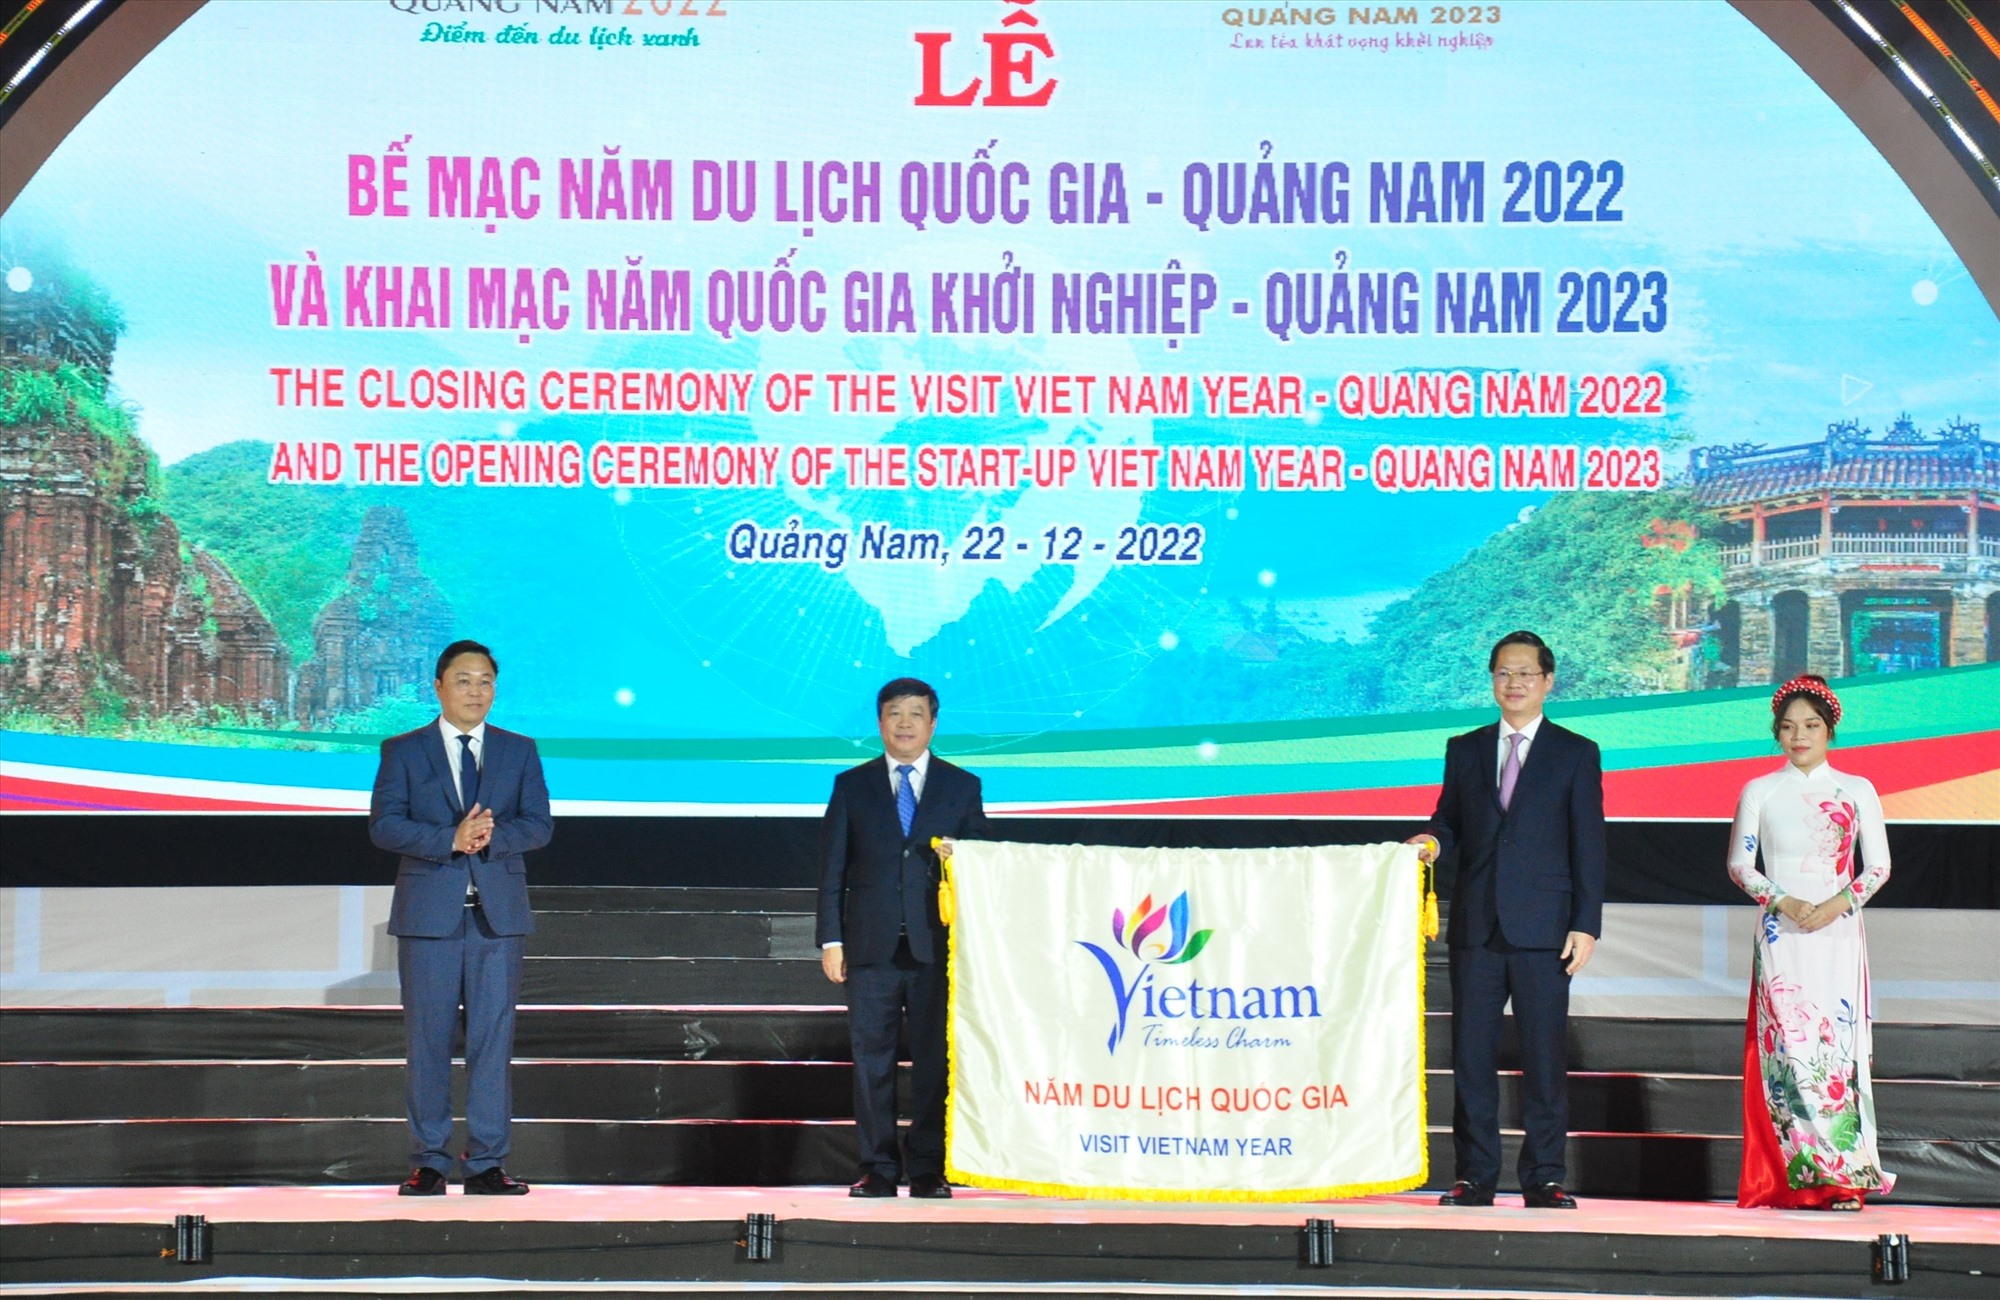 Ban Tổ chức chuyển giao cờ đăng cai tổ chức Năm Du lịch quốc gia 2023 cho tỉnh Bình Thuận 